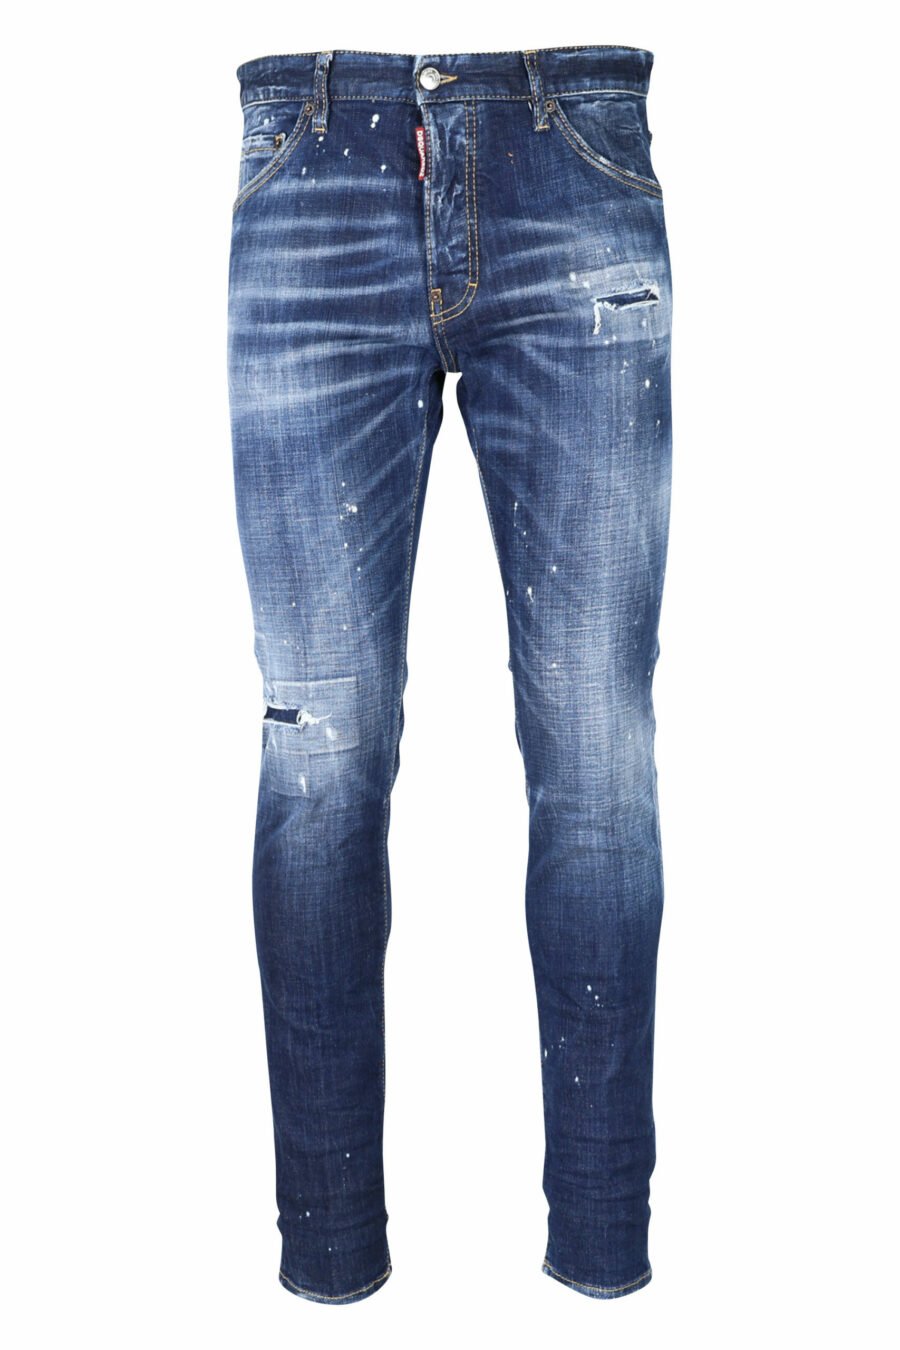 Blaue "cool guy jean" Jeans mit Farbe und ausgefranst - 8054148101688 skaliert